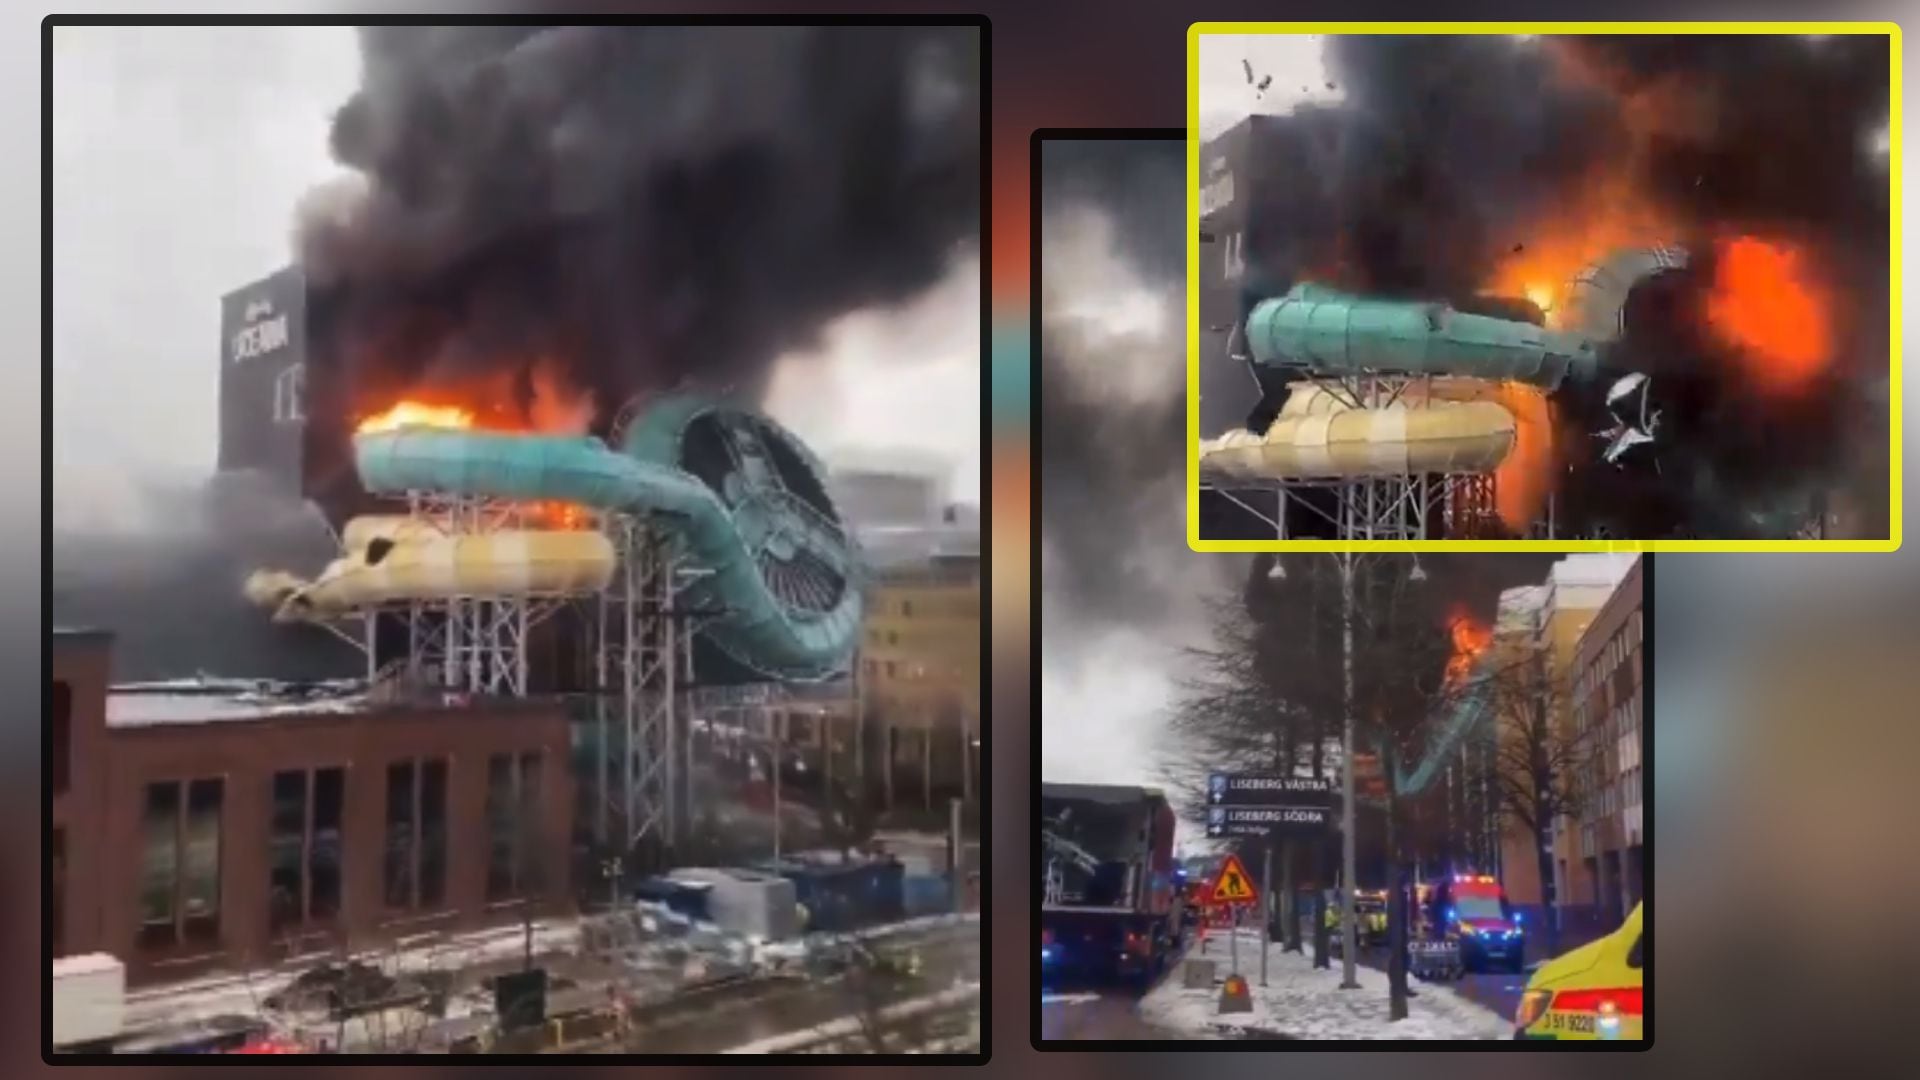 video: explosión en parque acuático desata colosal incendio en varias atracciones en suecia